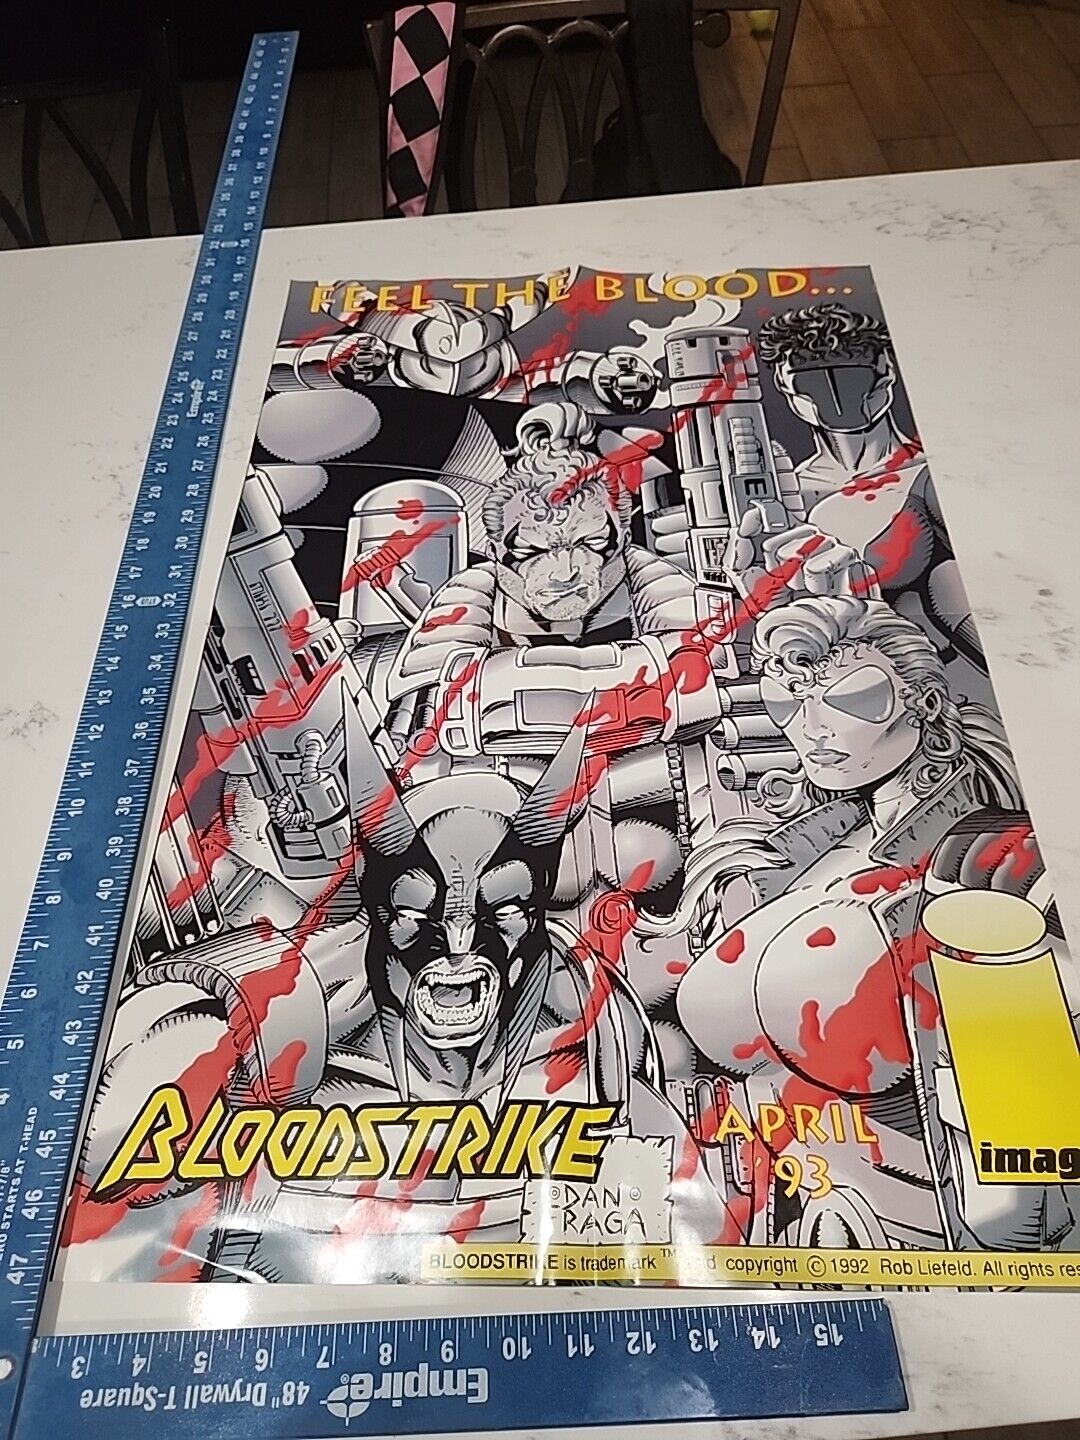 Image Promo folded Poster Comic Book Shop Vintage Bloodstrike